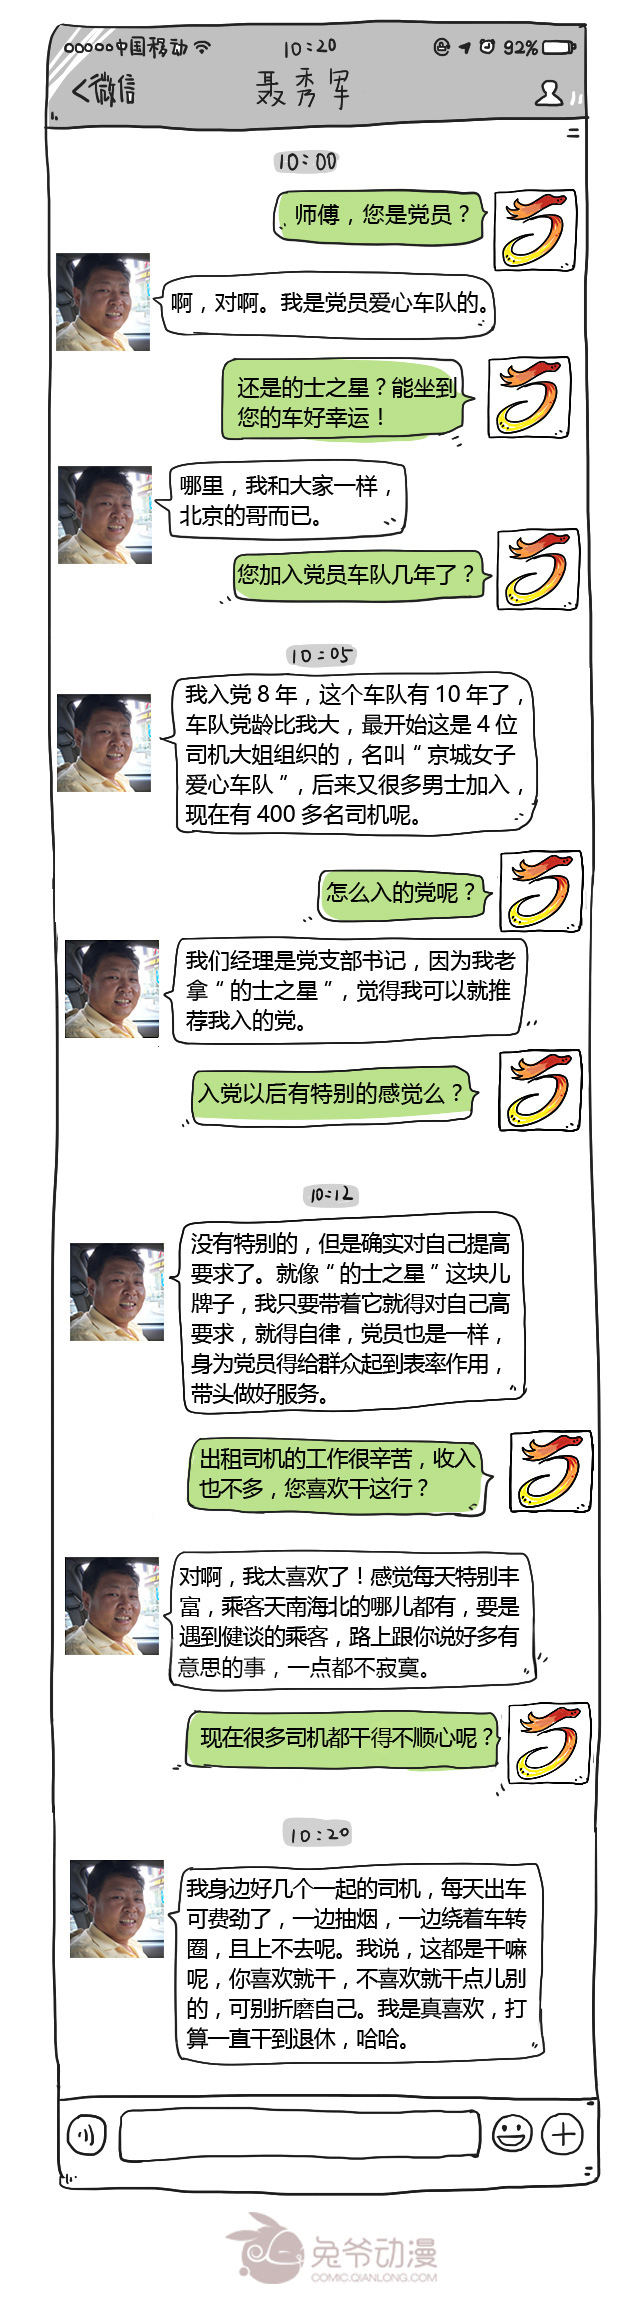 千龙网与党员的哥聂秀军的聊天记录